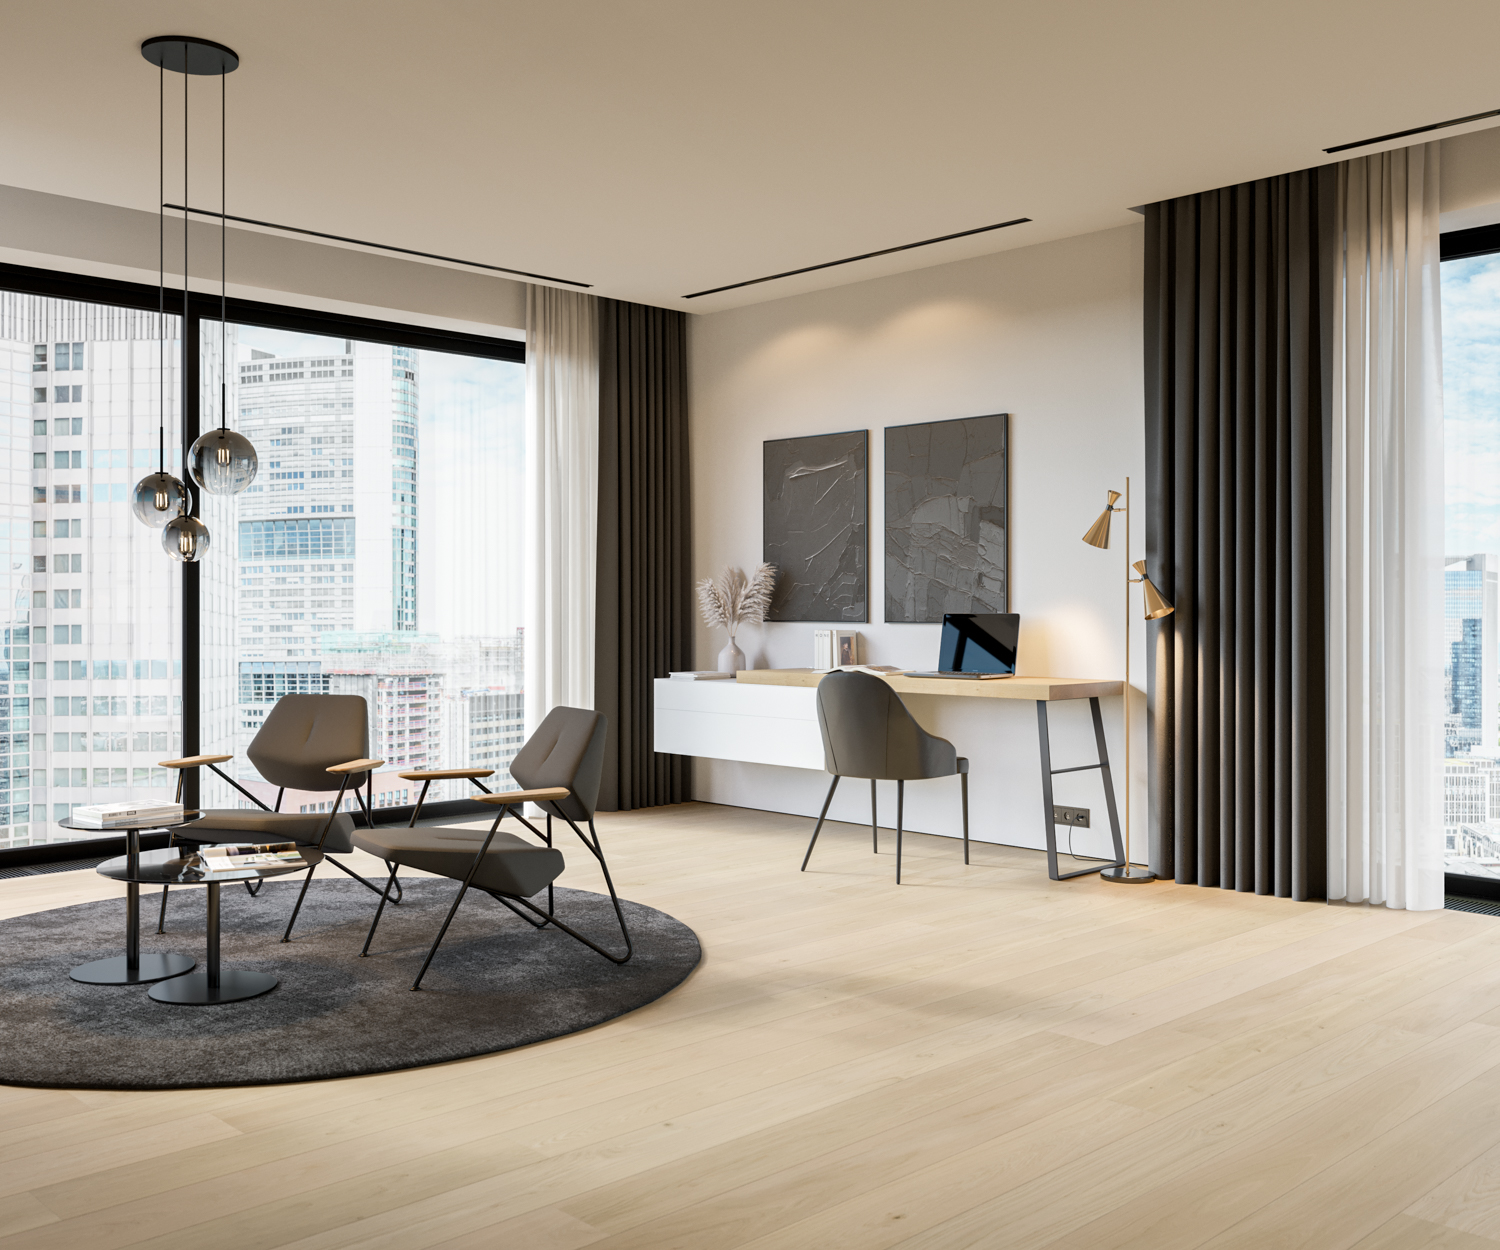 Appartement de luxe avec un bureau moderne, une commode et un salon confortable avec des fauteuils.